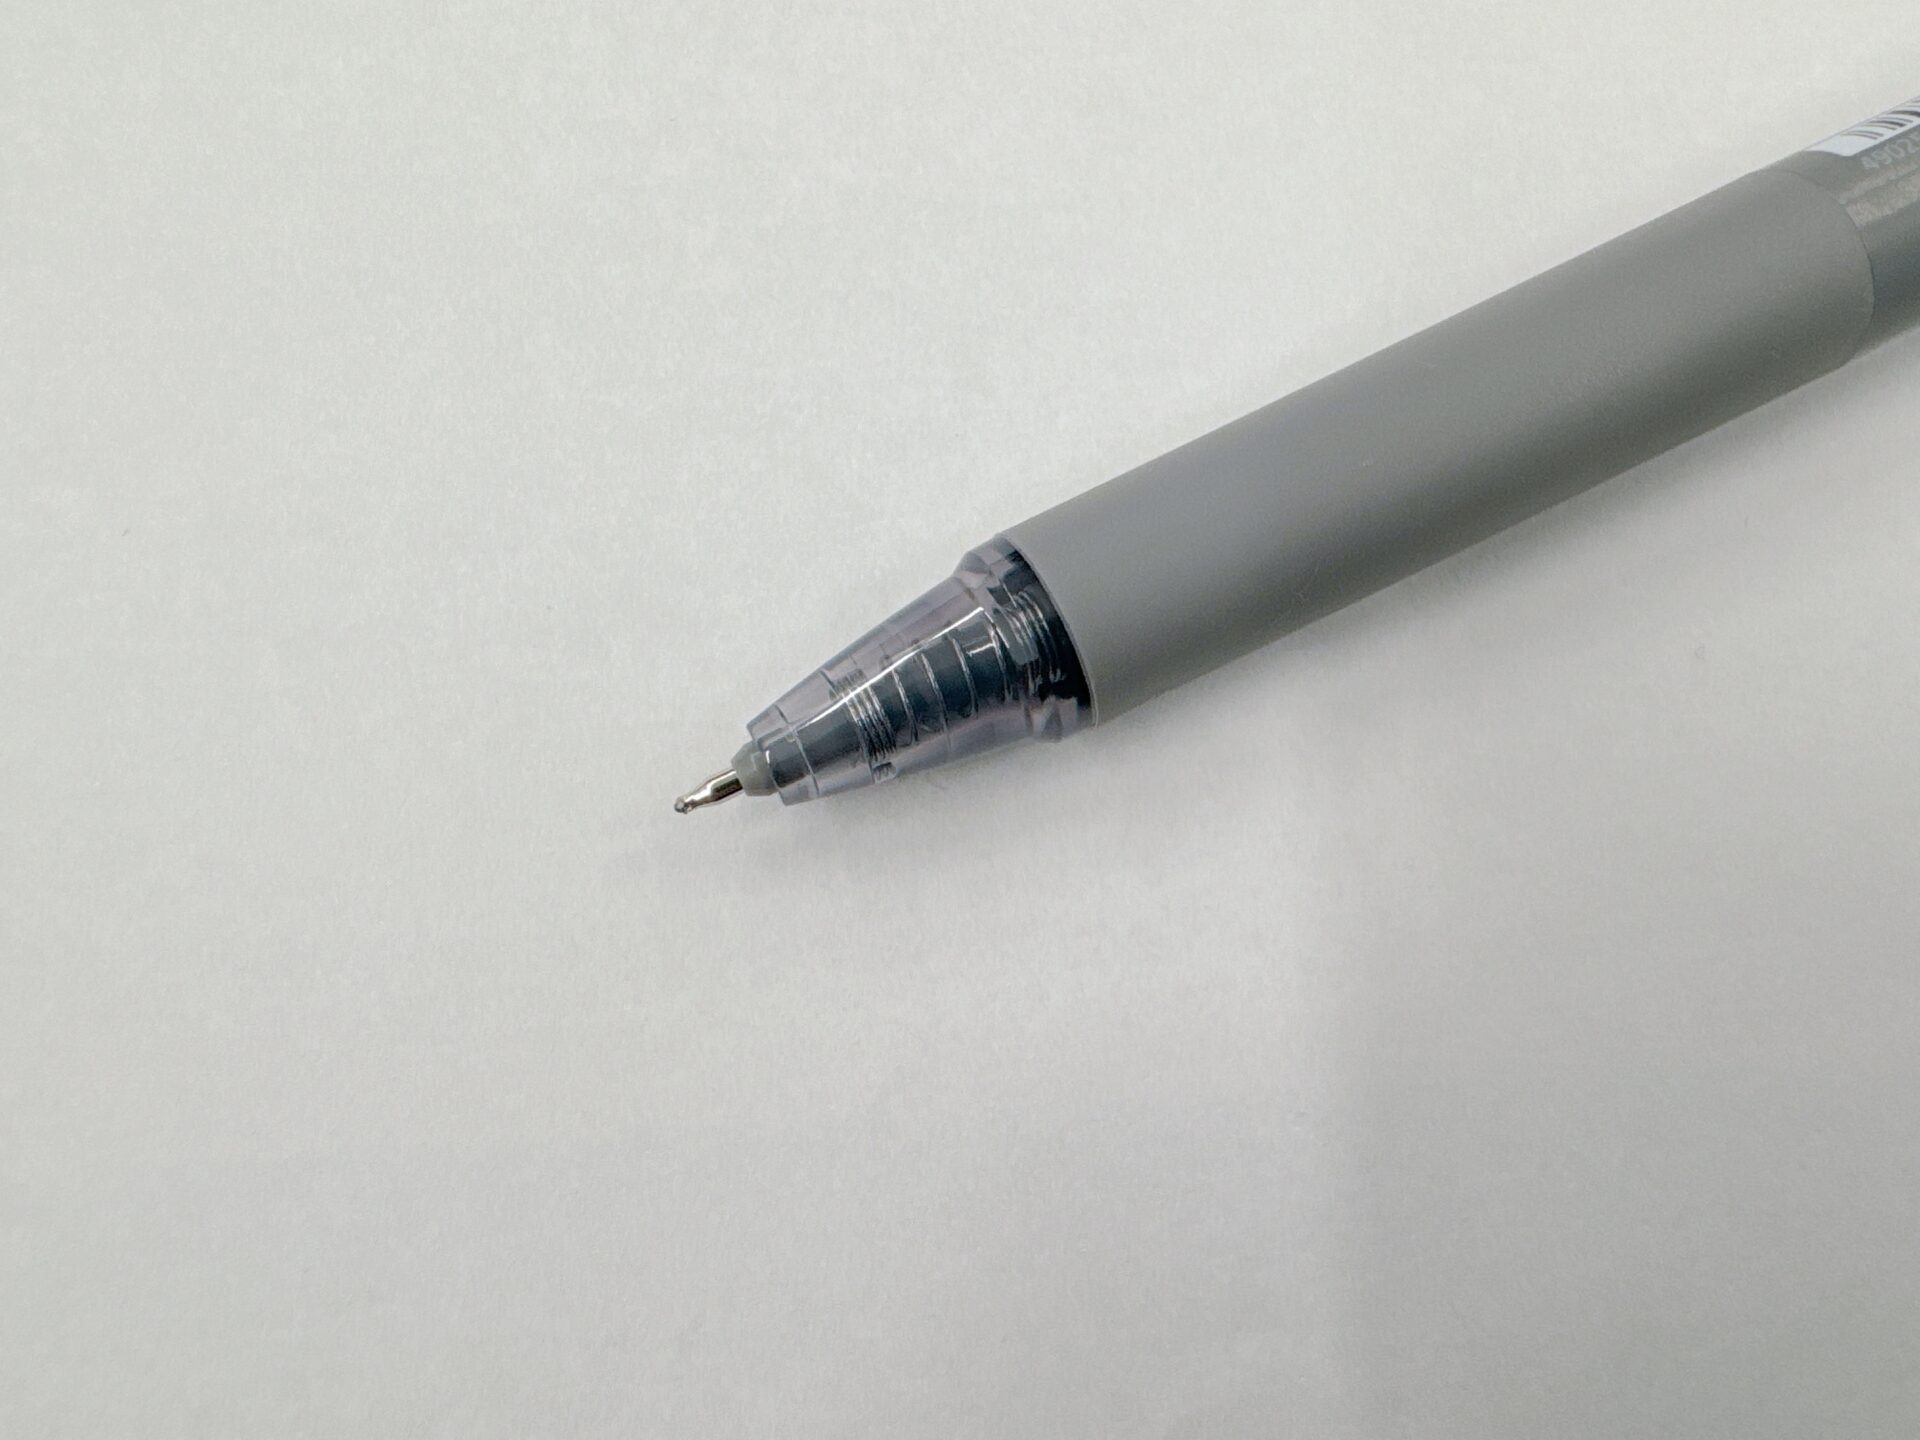 フリクションシナジーノックのペン先のクローズアップ写真。通常のボールペンよりはややするどいペンさきです。ハサミやカッターを使わずにダンボール箱を開封するときにあけやすそうな形状、といえば伝わりやすいでしょうか